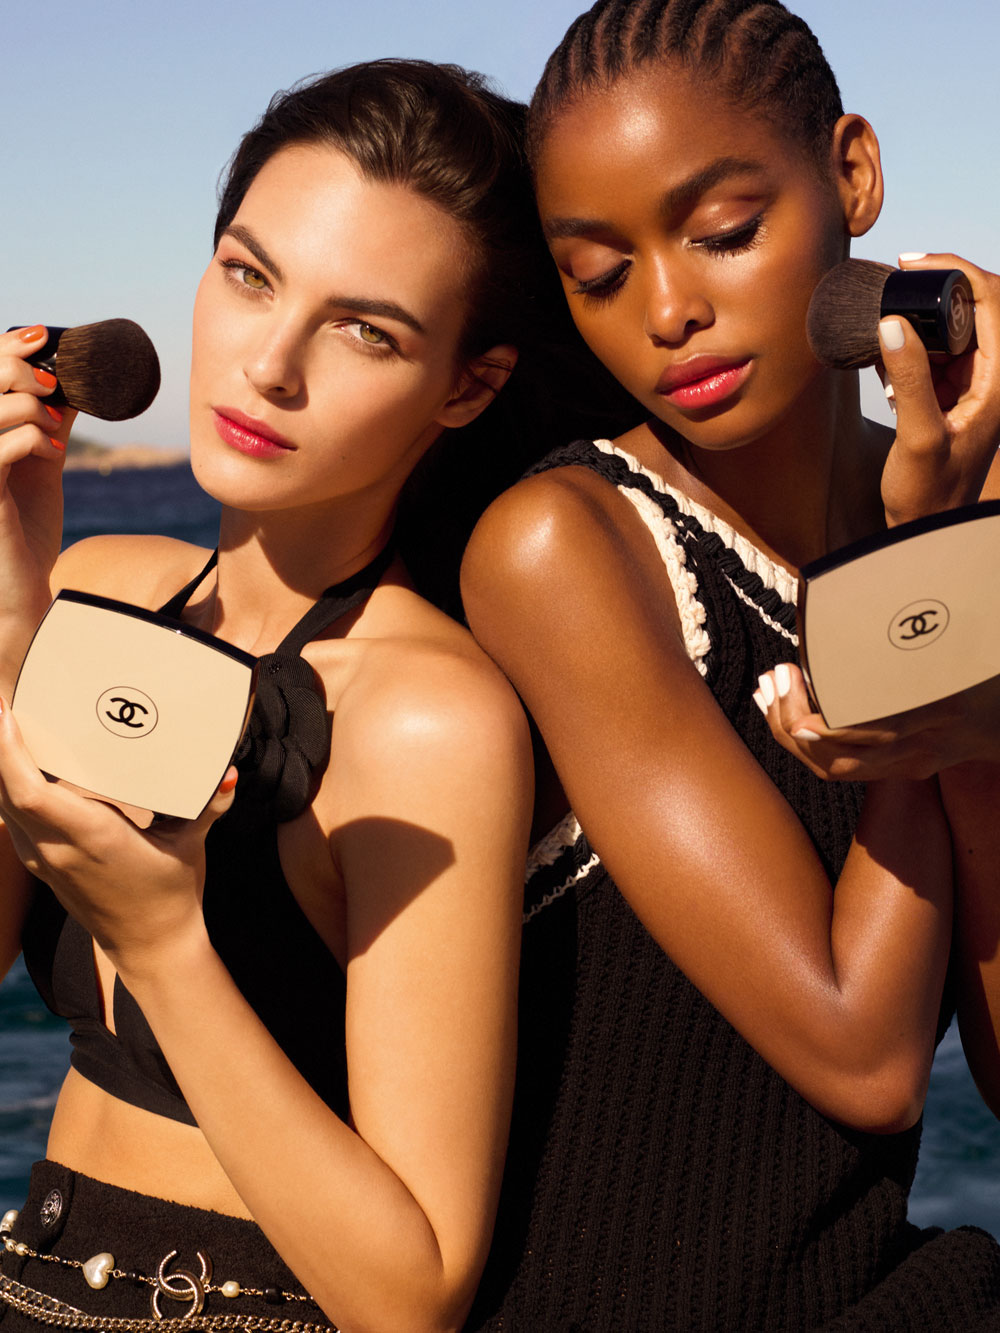 Chanel setzt bei Les Beiges im Jahre 2022 auf Oversized Produkte für den perfekten Glow. 